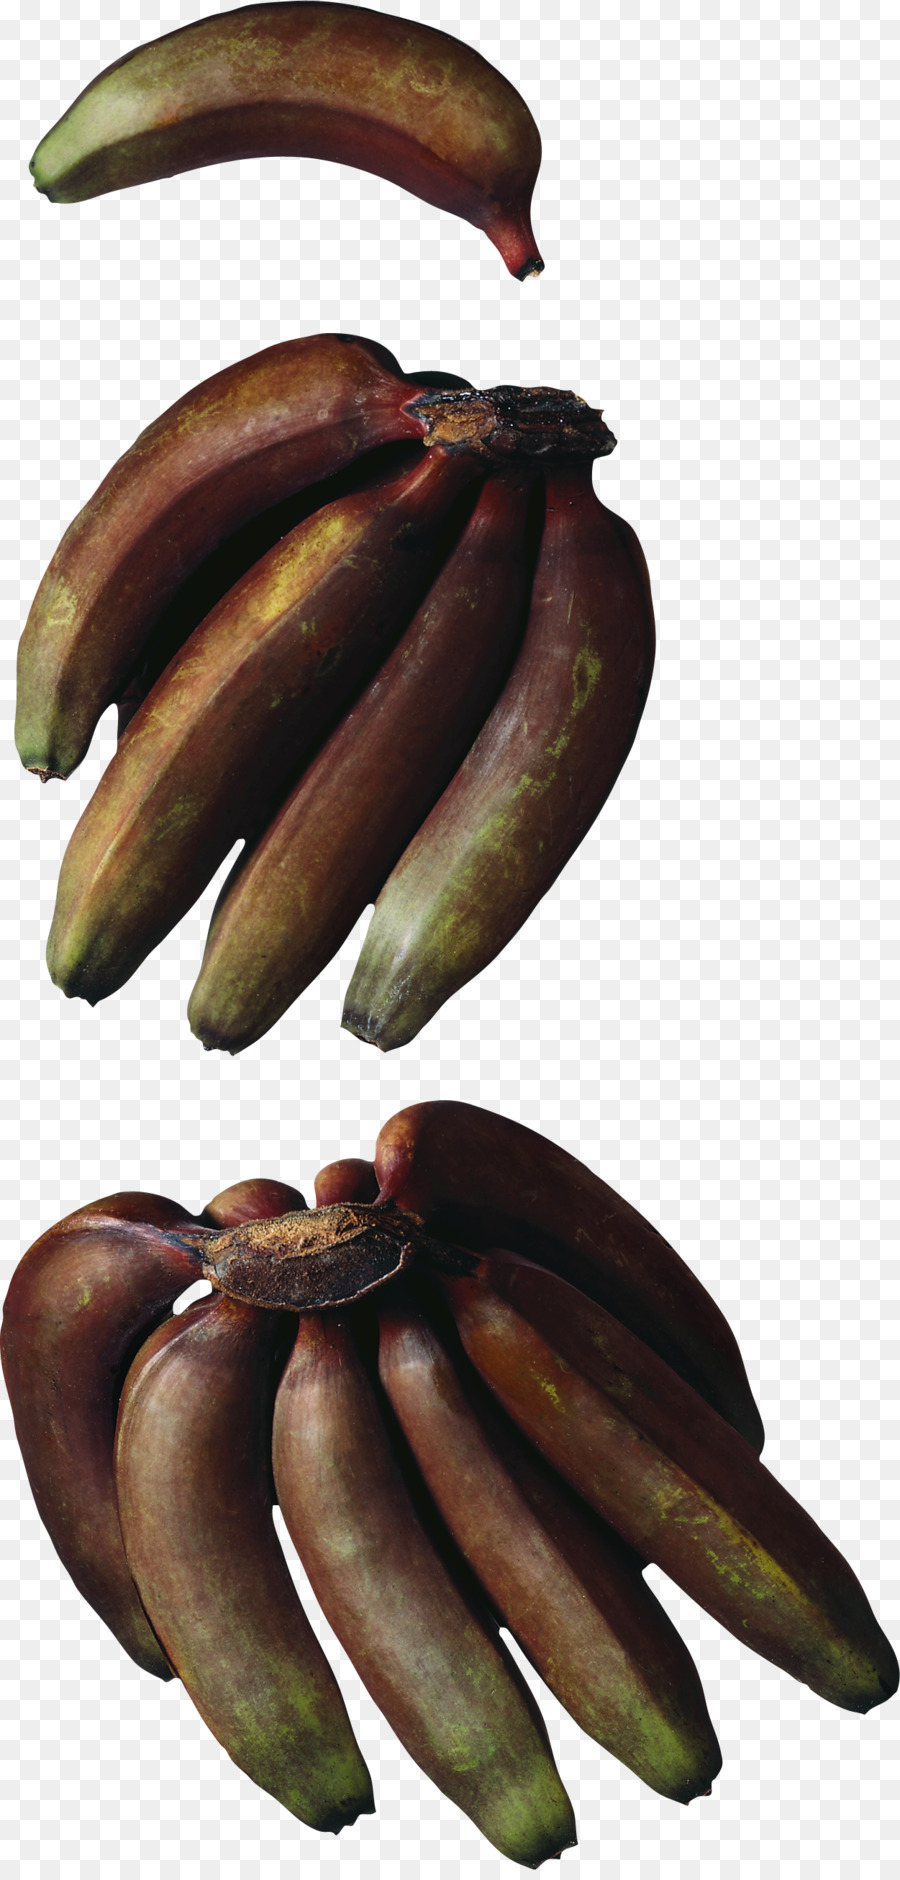 Cucina banana Hardy banana Rosso banana Musa × paradisiaca - altri